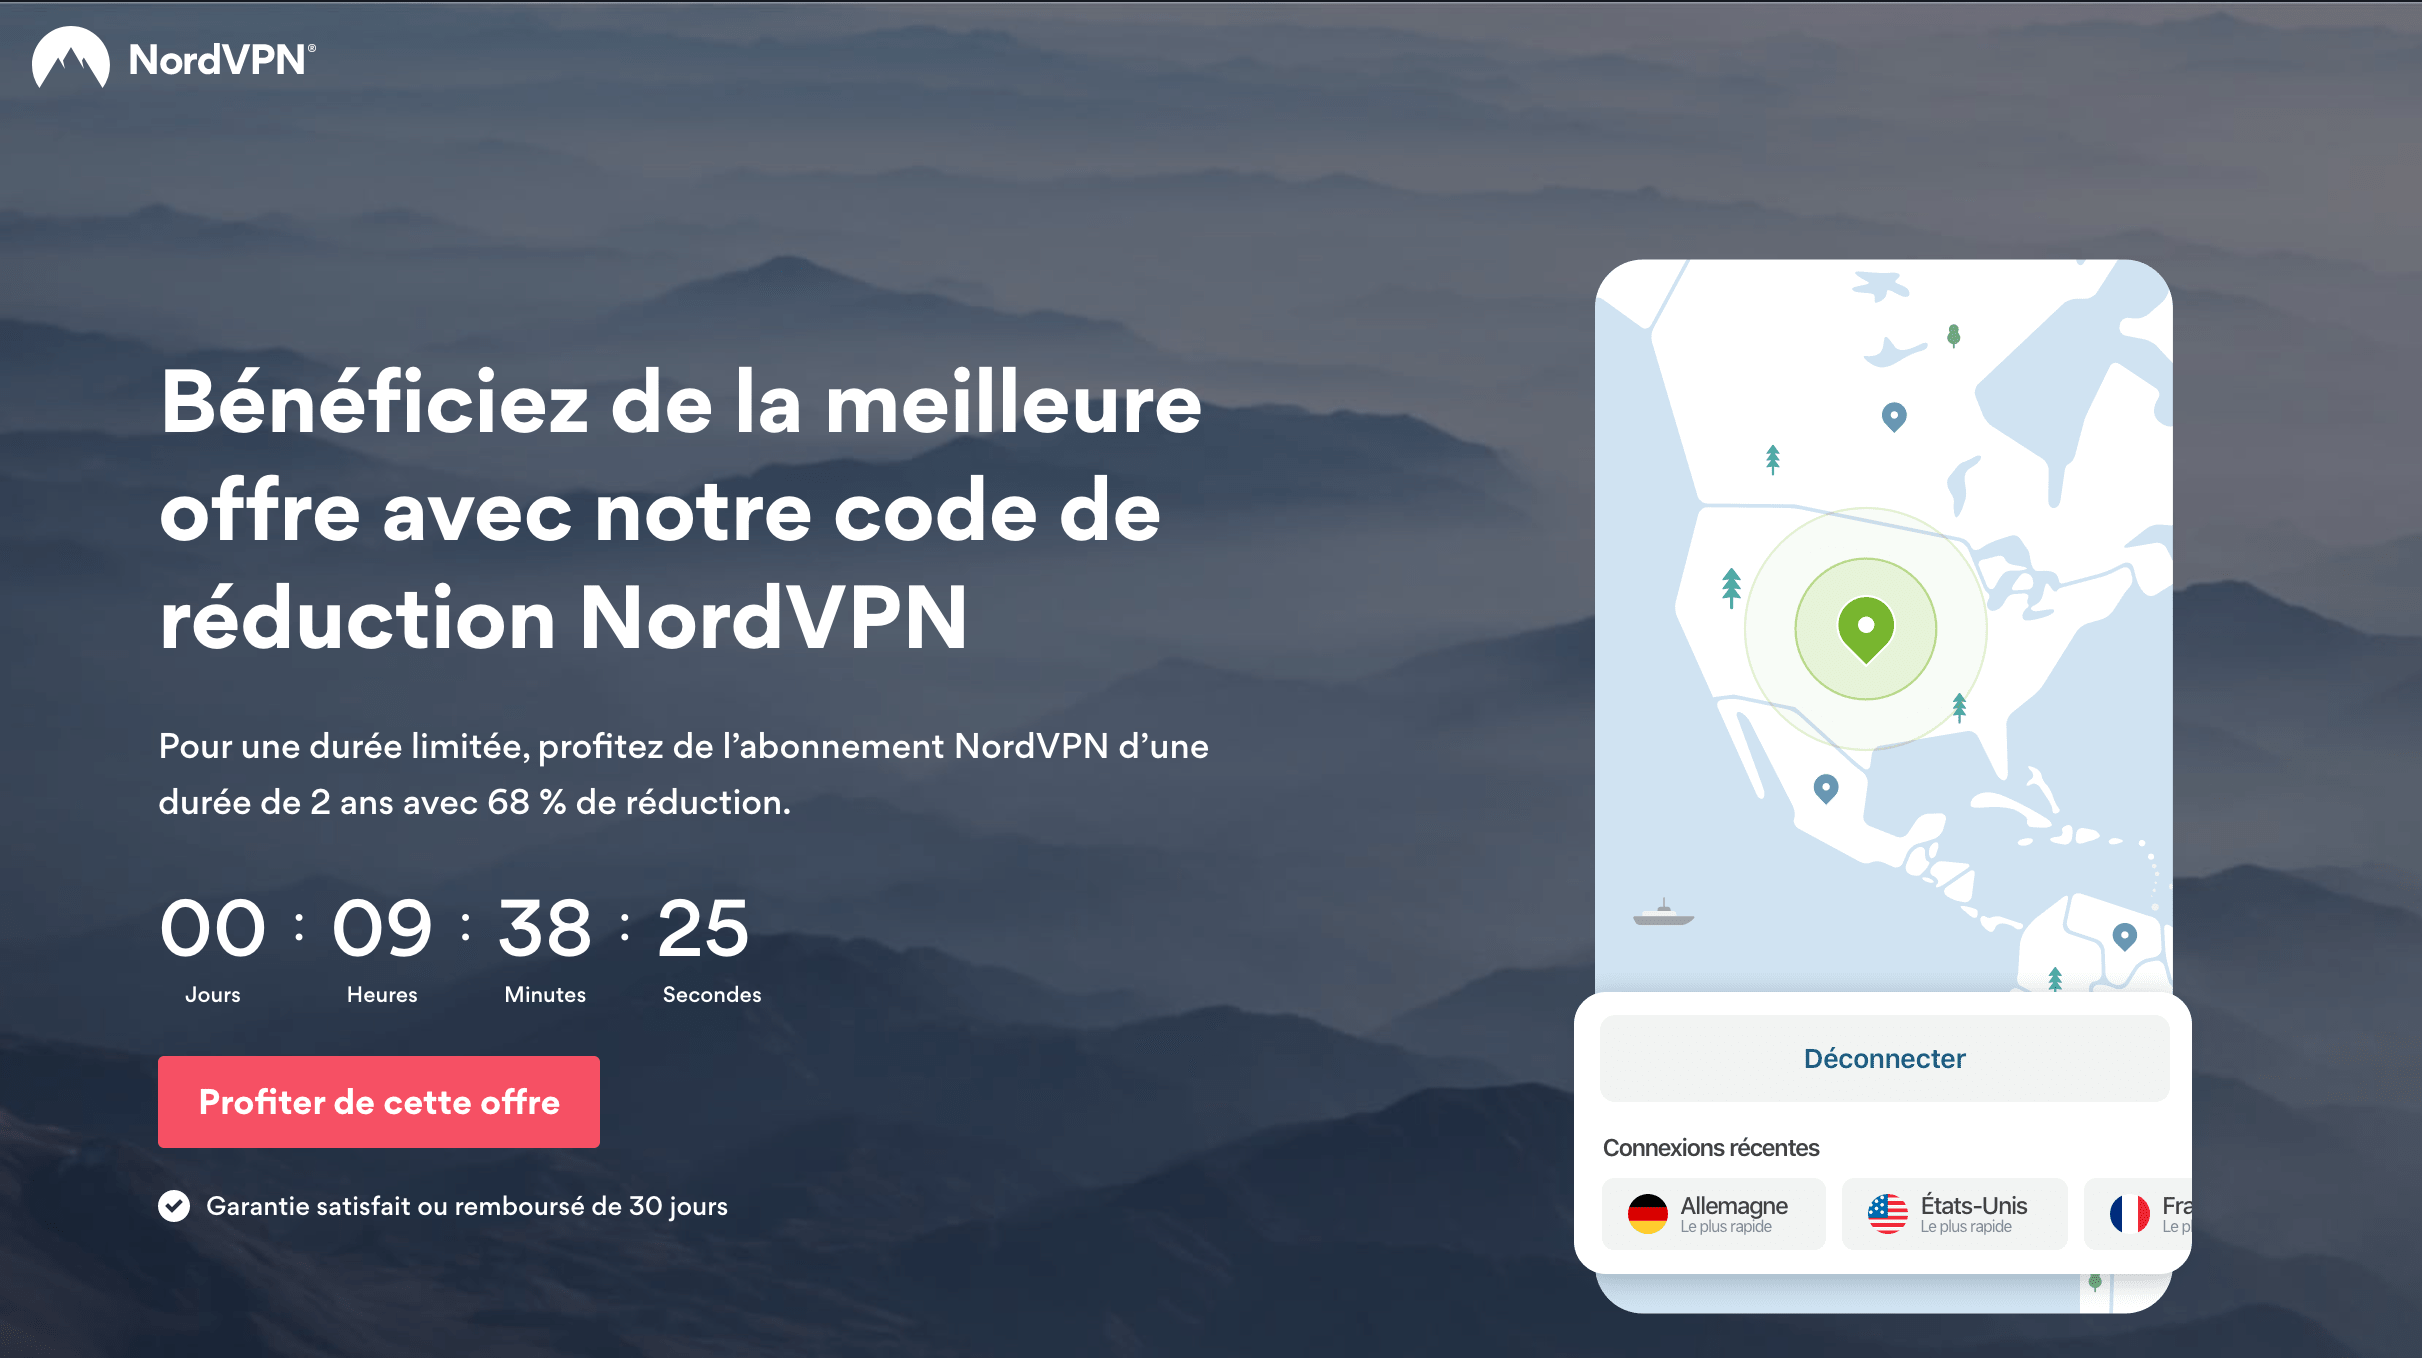 NordVPN à -68% grâce au code promo tipsfromgeeks.